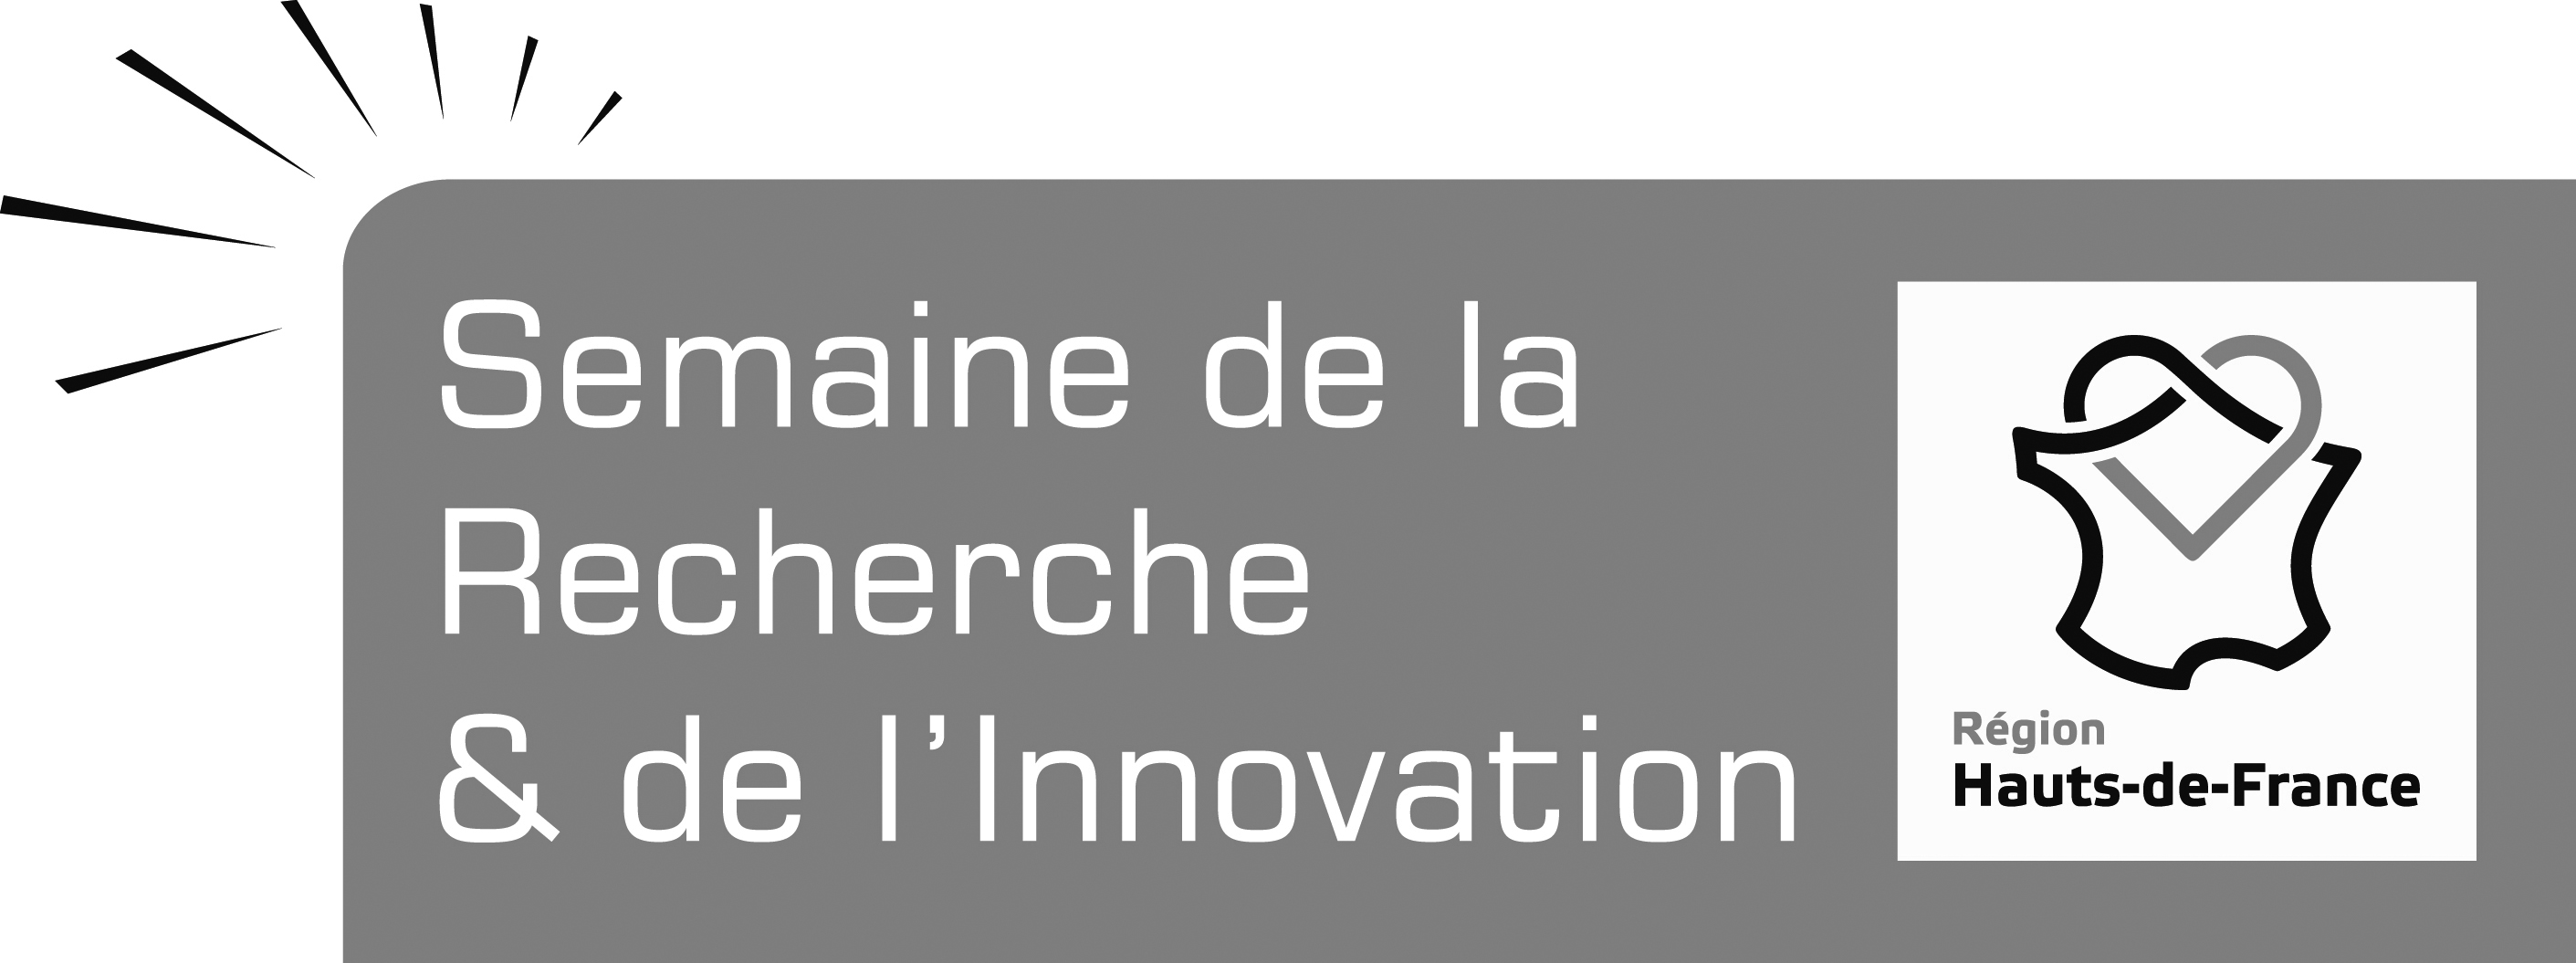 logo Semaine de l'innovation